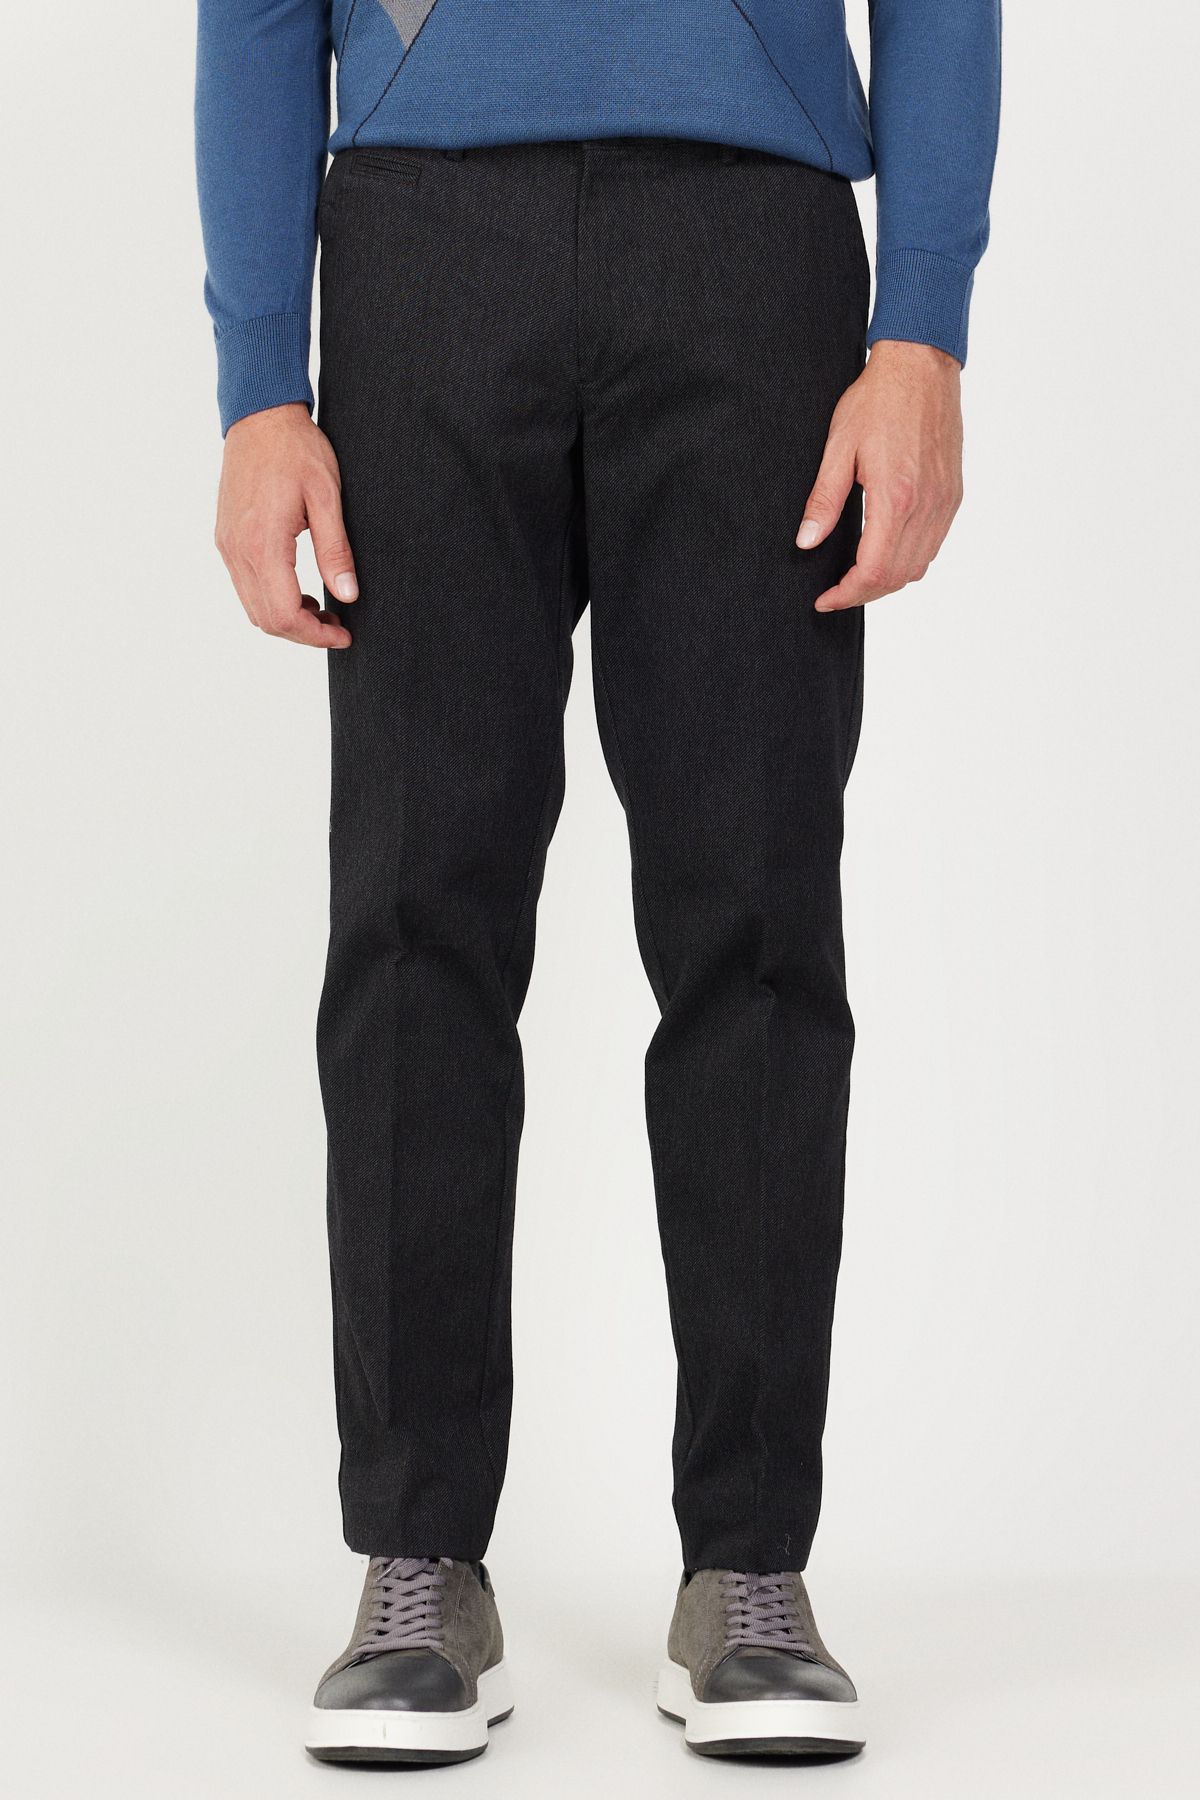 Altınyıldız Classics Erkek Siyah Comfort Fit Rahat Kesim Yan Cepli Pamuklu Diyagonal Desenli Pantolon